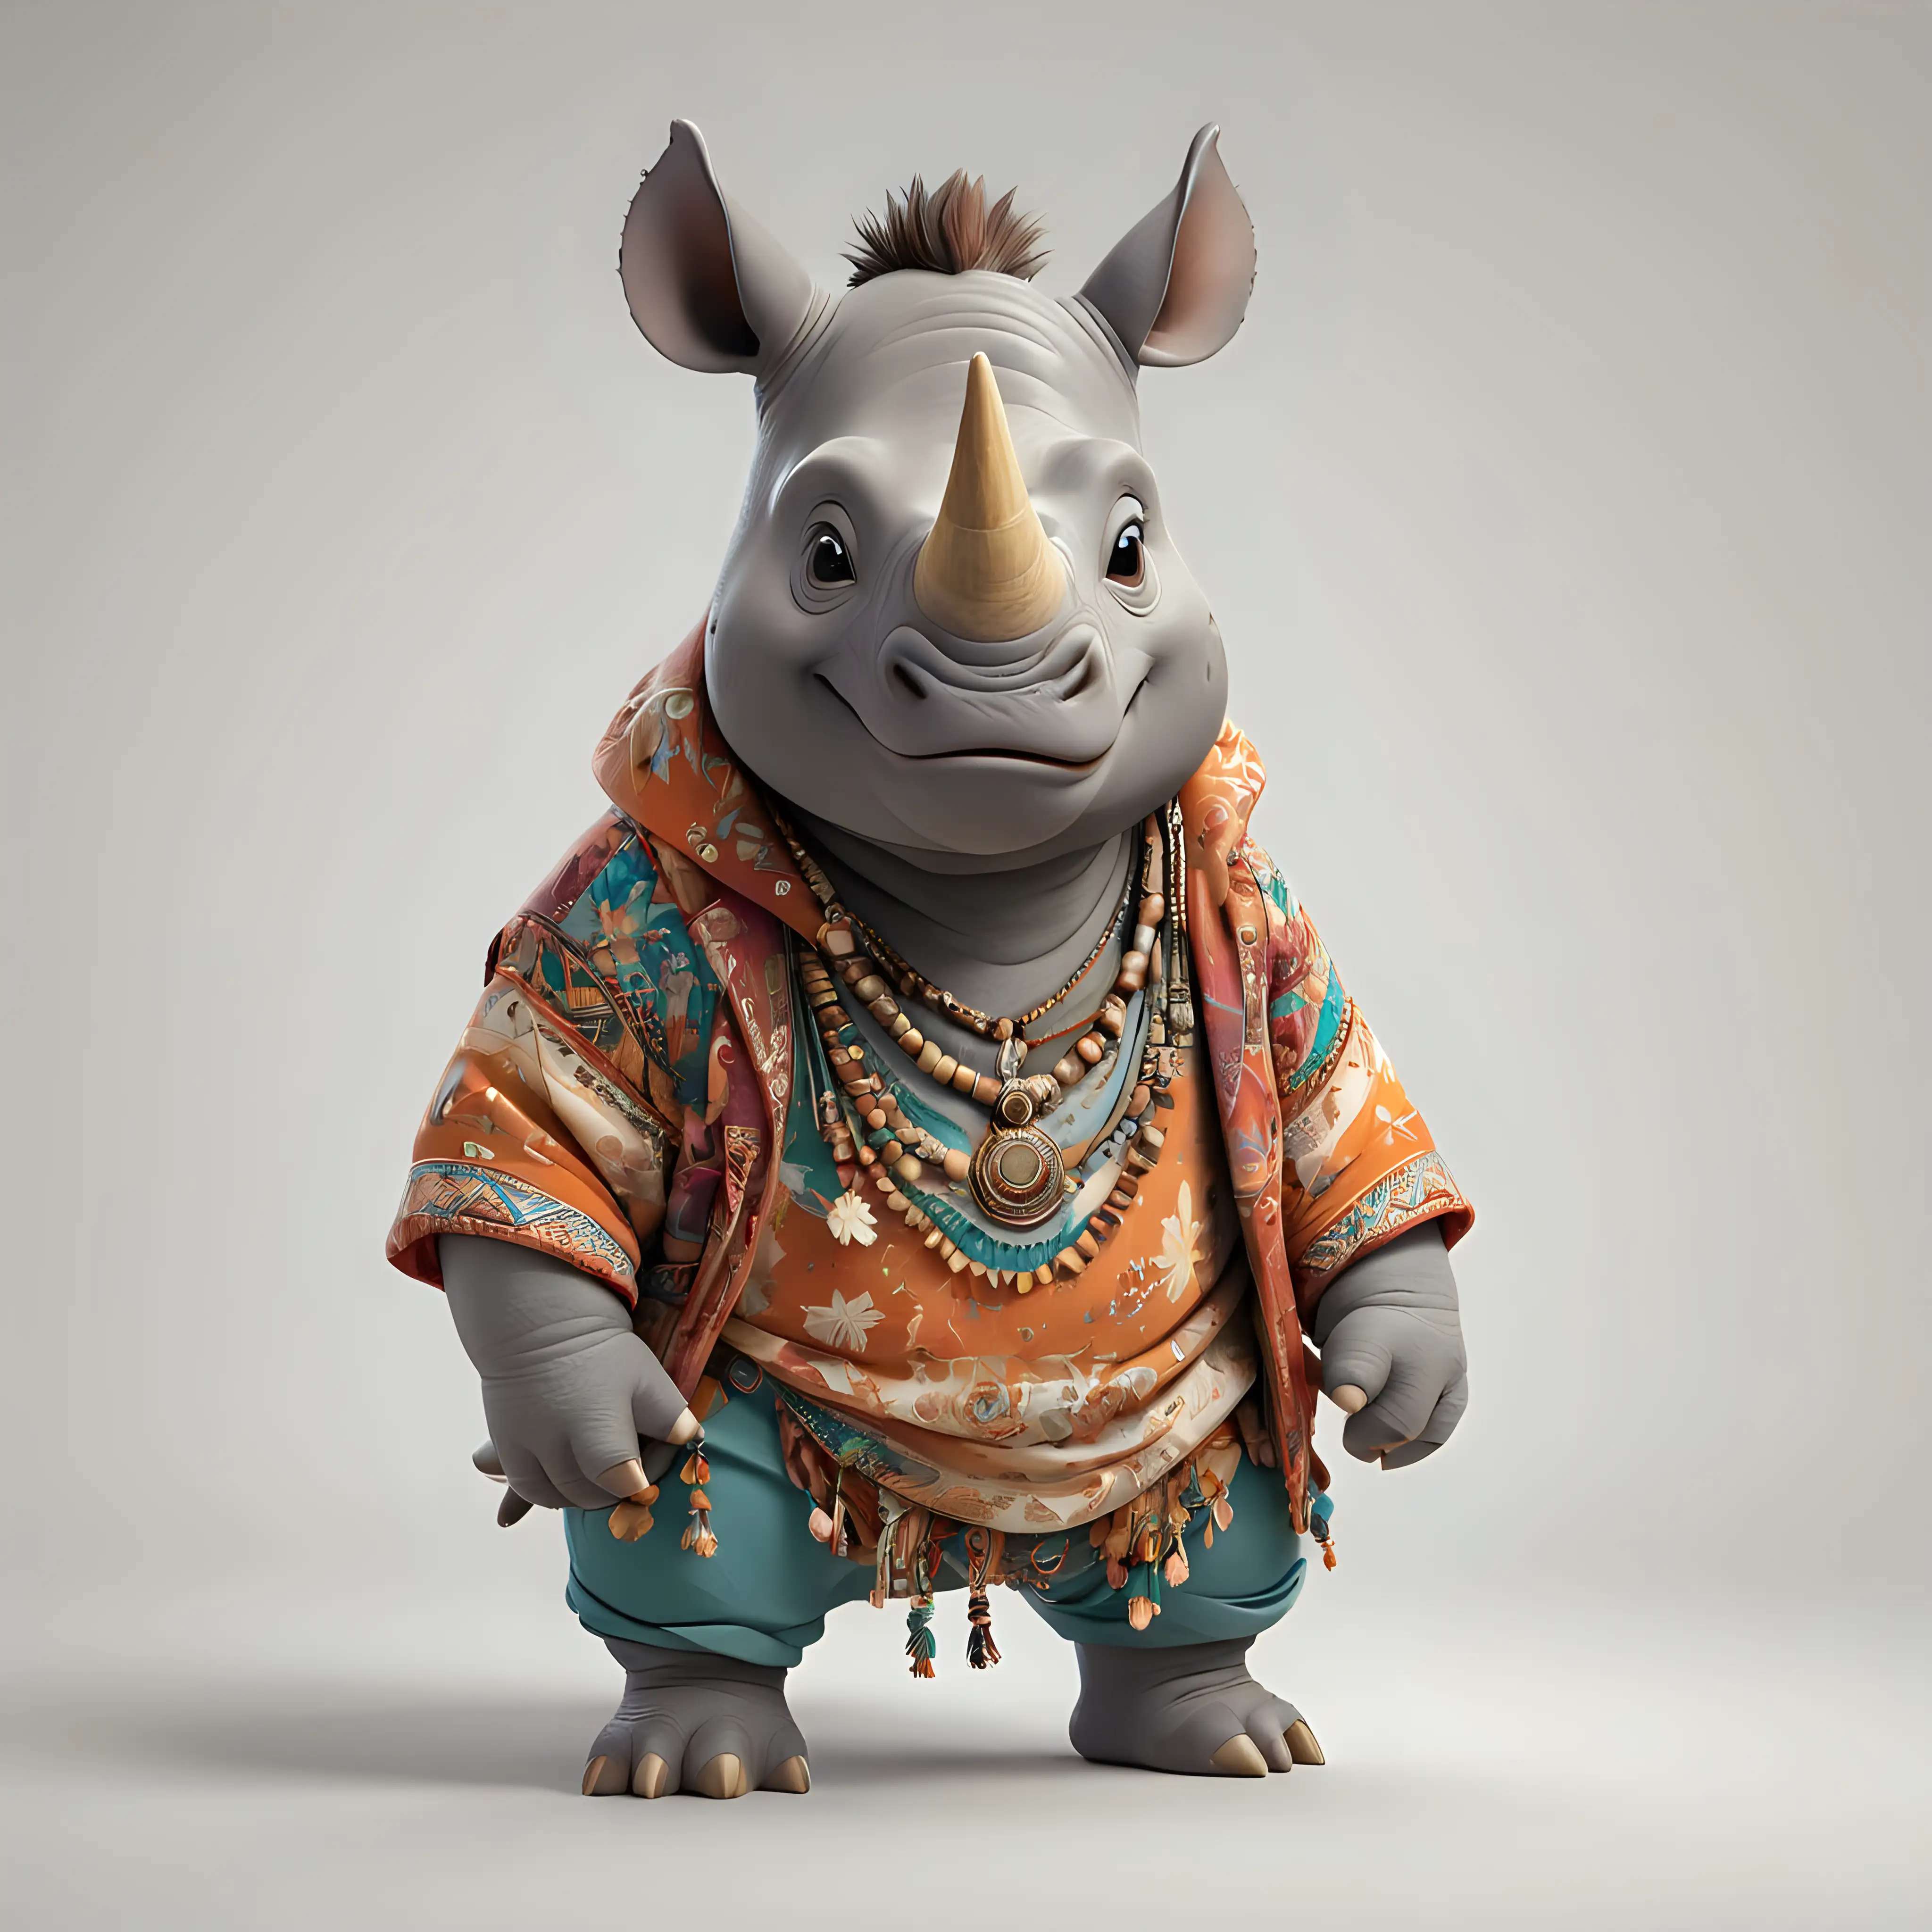 Boho Dressed Cartoon Rhinoceros on White Background